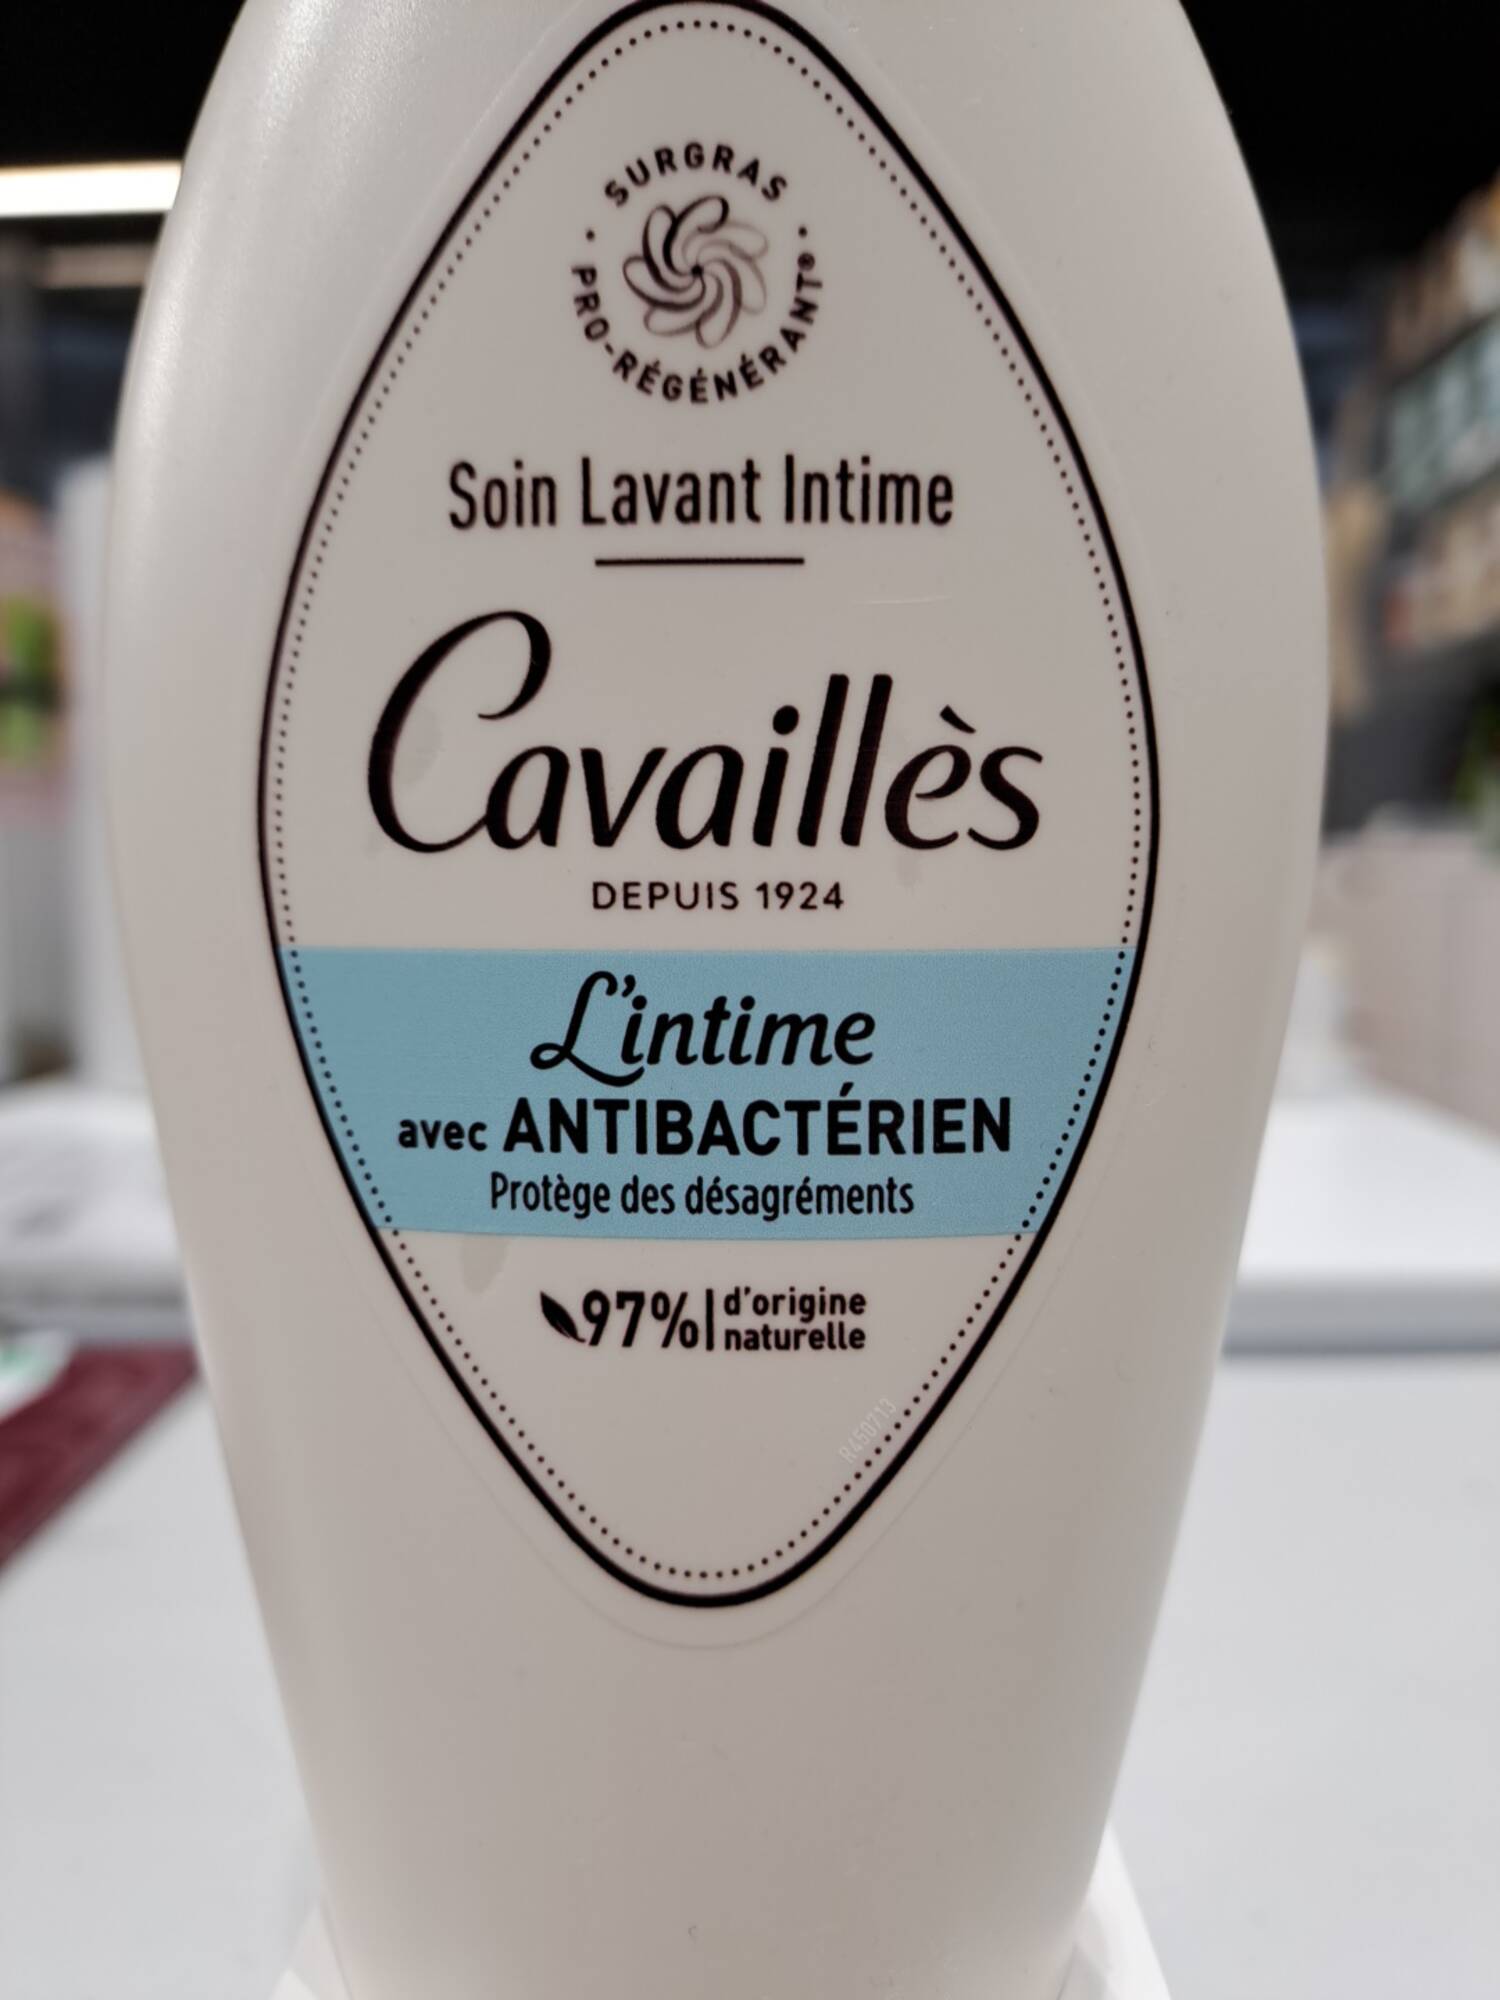 CAVAILLES - L'intime antibactérien - Soin lavant intime